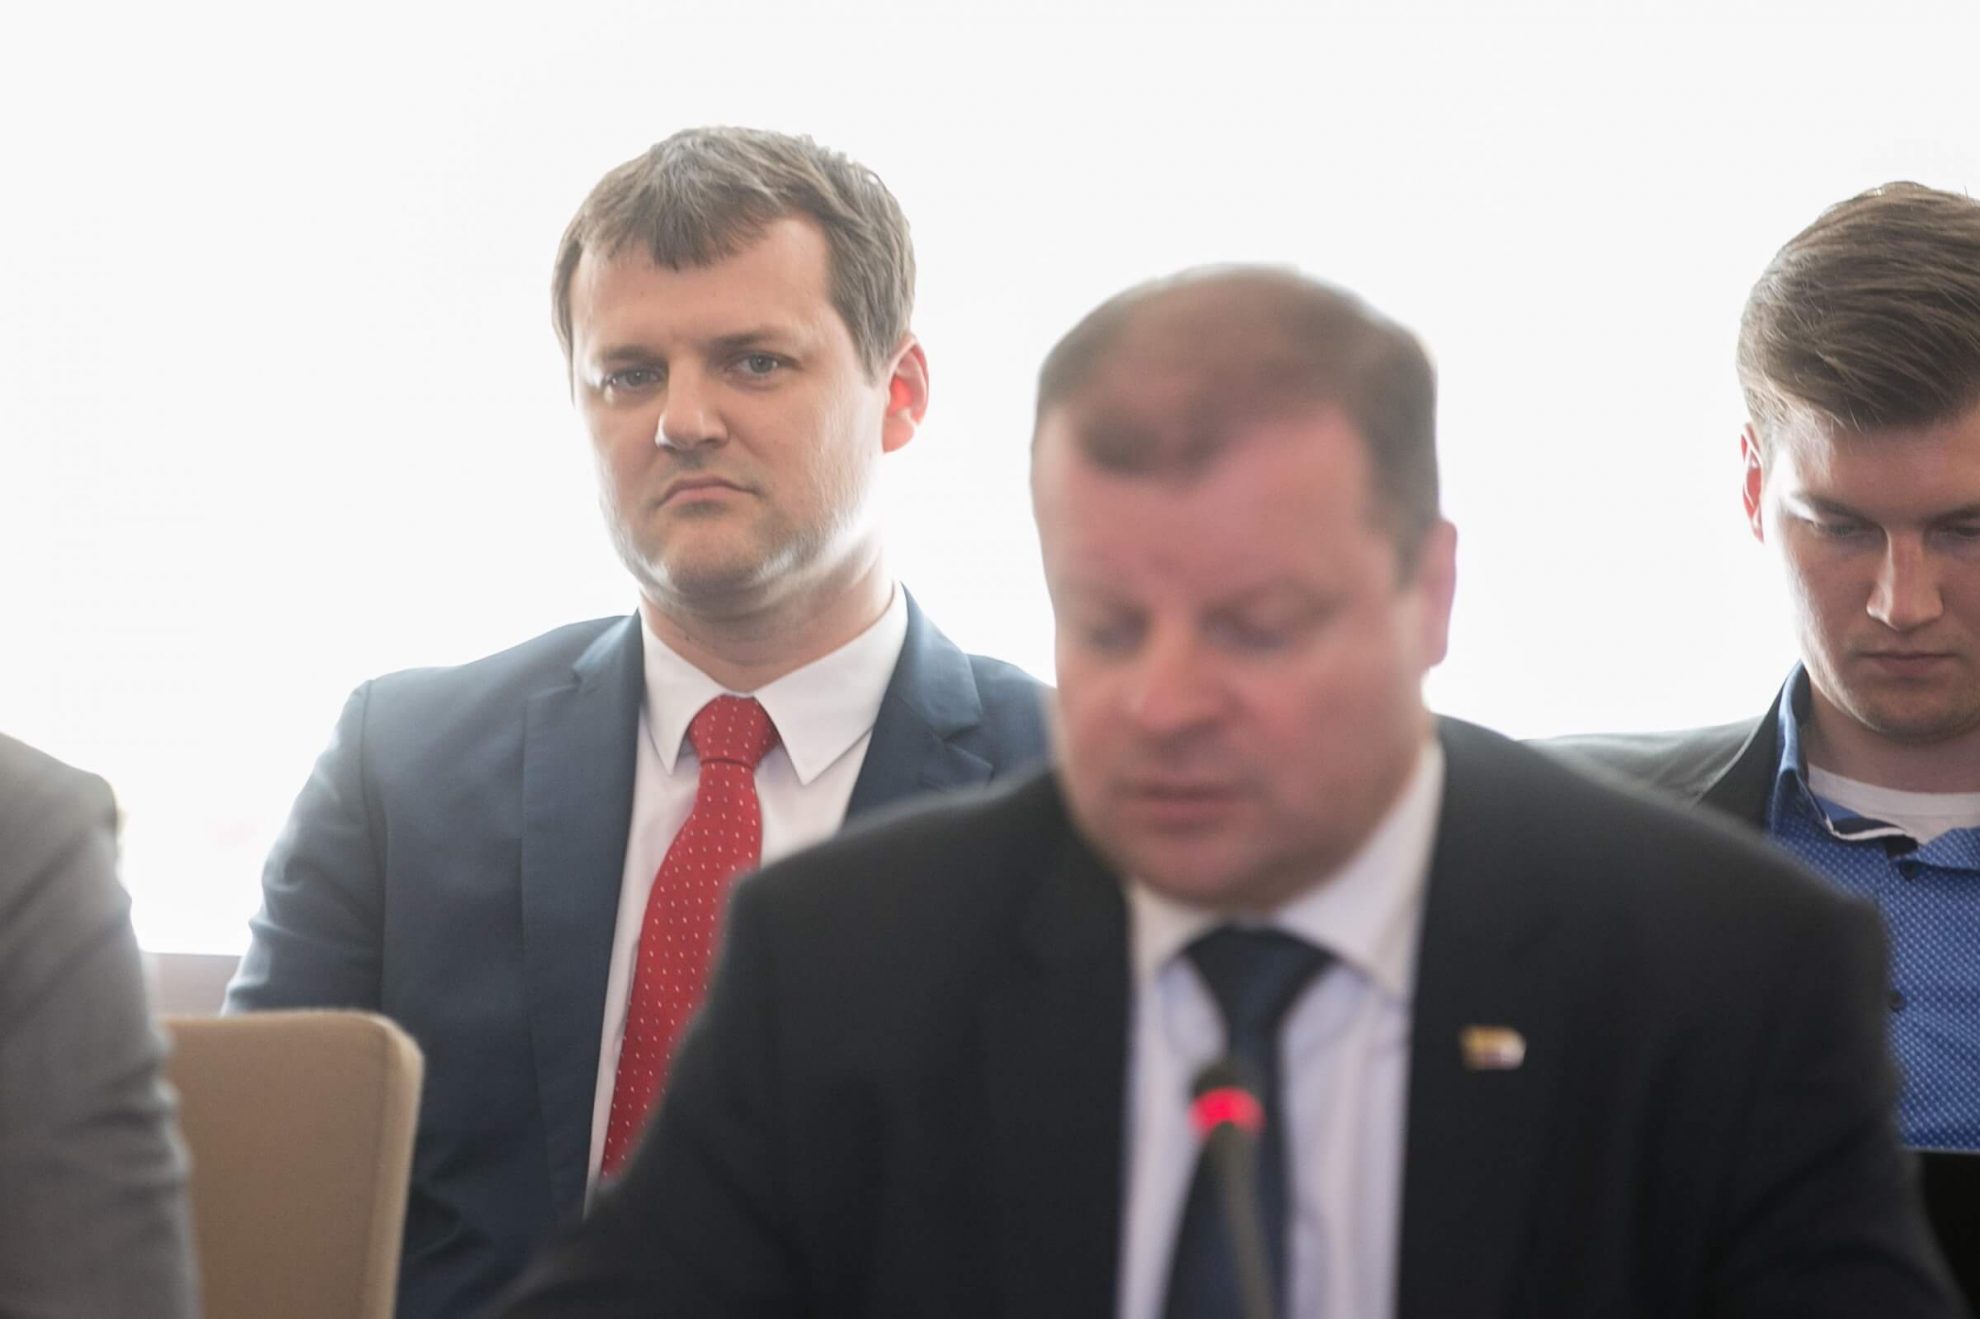 Lietuvos socialdemokratų partijos (LSDP) taryba šeštadienį nusprendė trauktis iš valdančiosios koalicijos su Lietuvos valstiečių ir žaliųjų sąjunga (LVŽS).